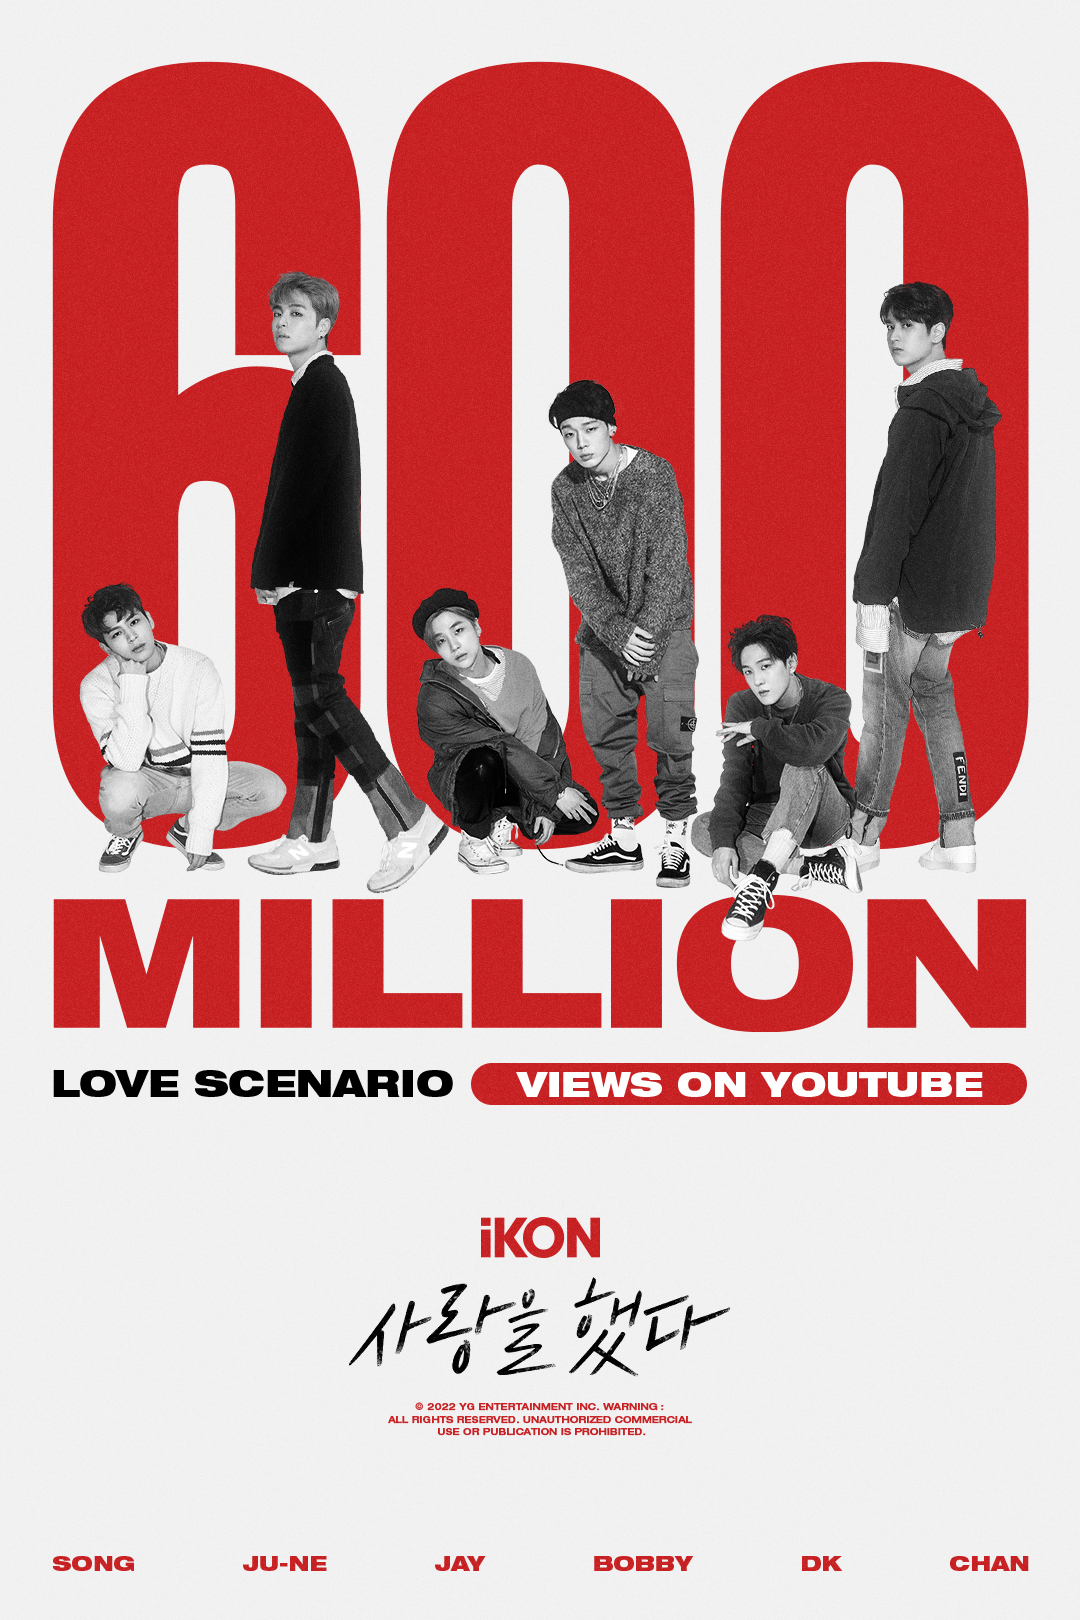 Poster chúc mừng MV “Love Scenario” của iKON đạt 600 triệu lượt xem. Ảnh: @ygent_official